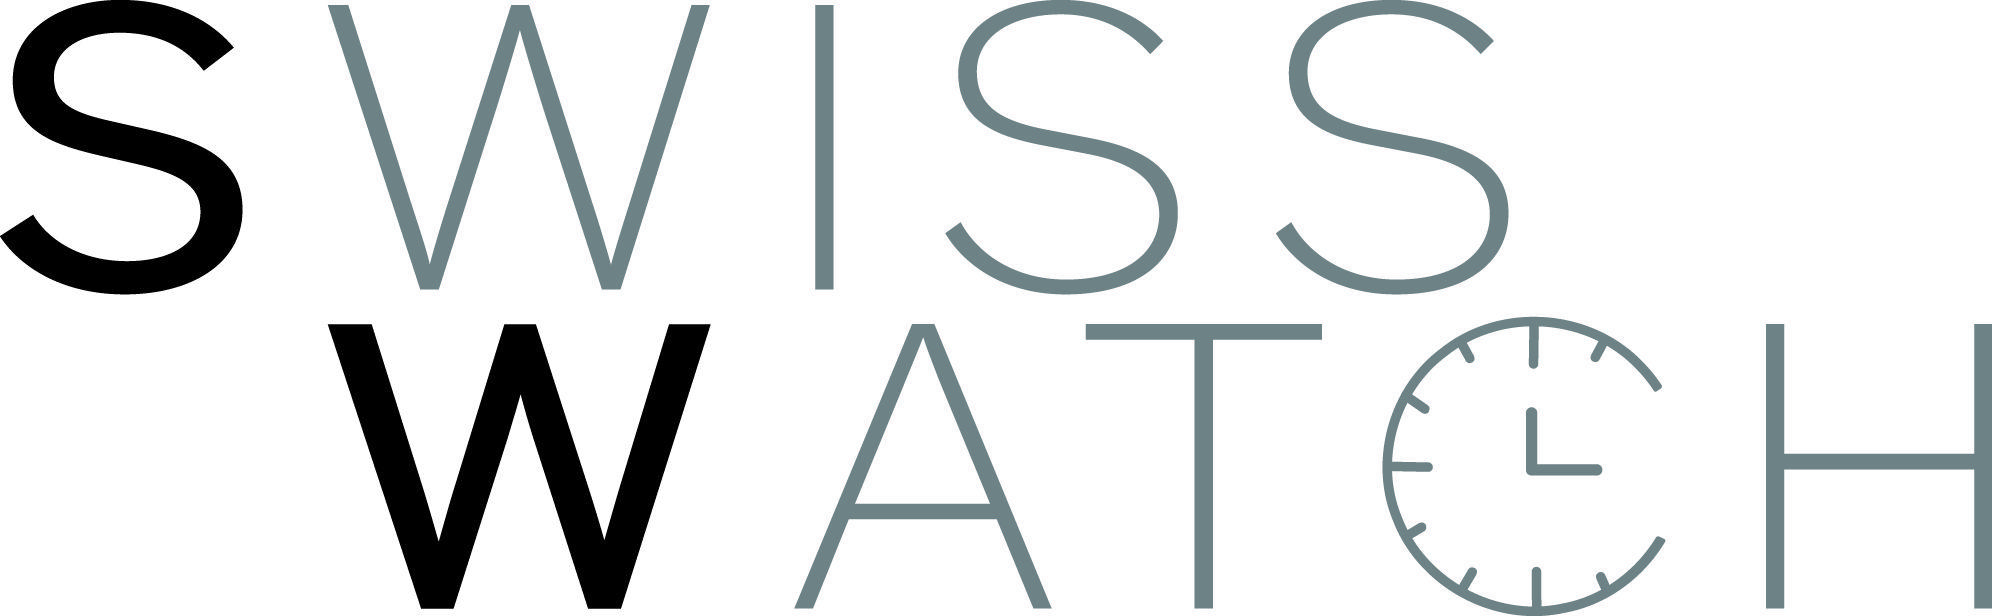 Swiss Watch Logo - Swiss Watch - Luxury | Wed, May 29 – Mon, June 3, 2019